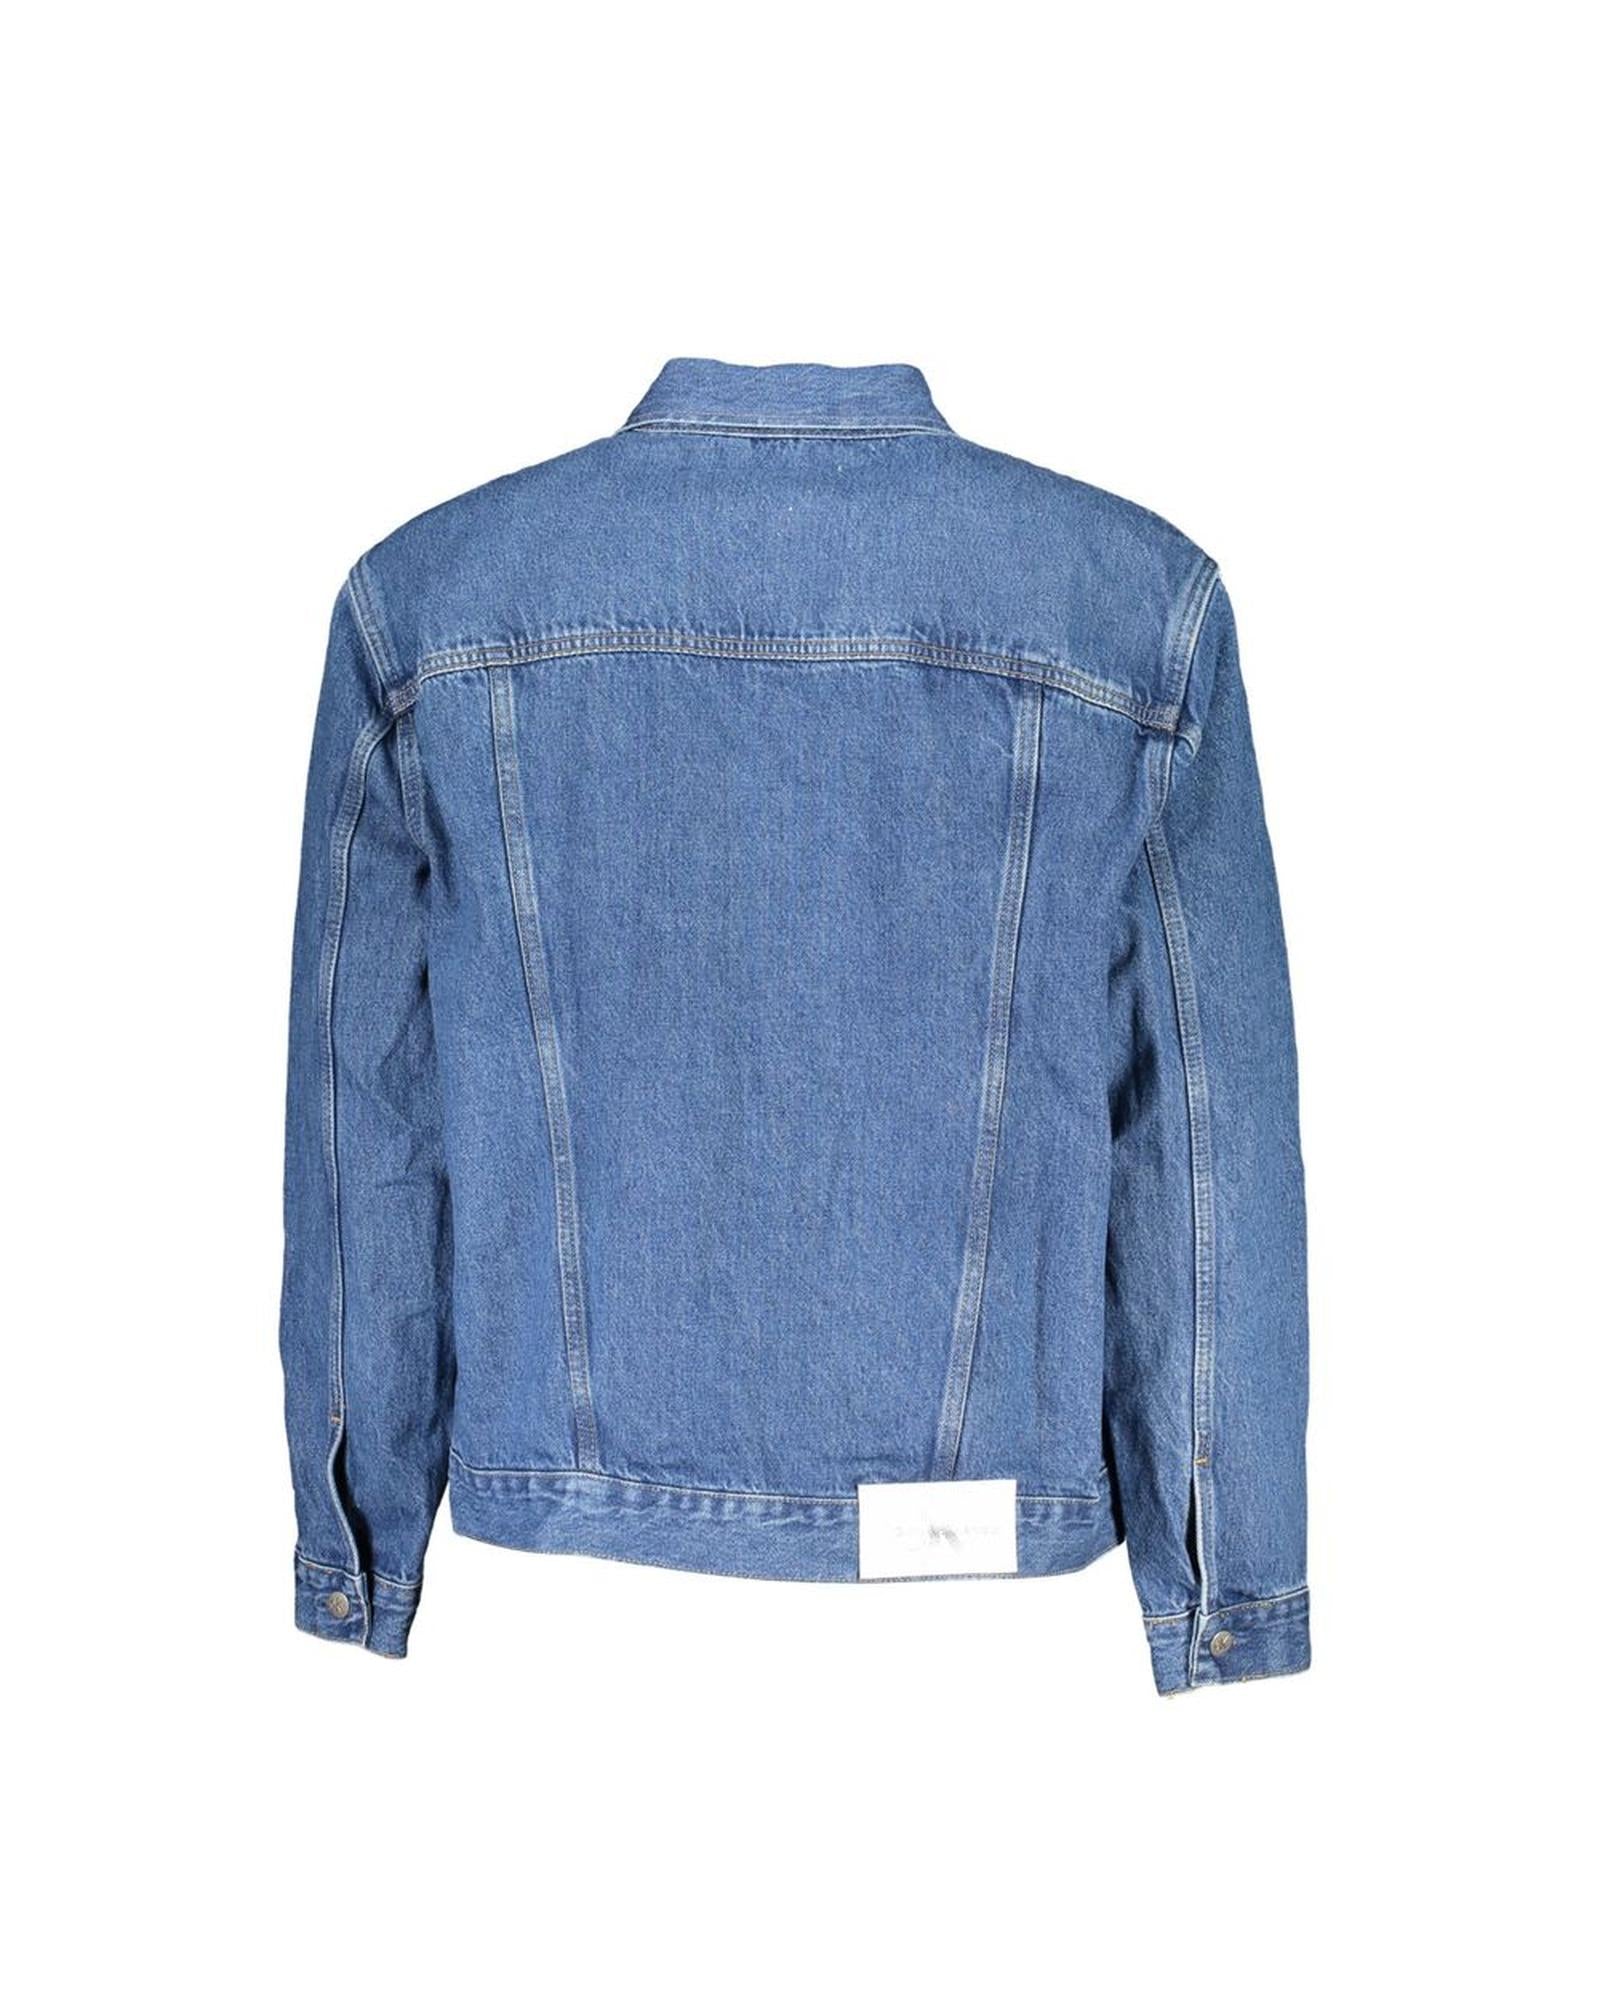 Men's Blue Cotton Jacket - XL